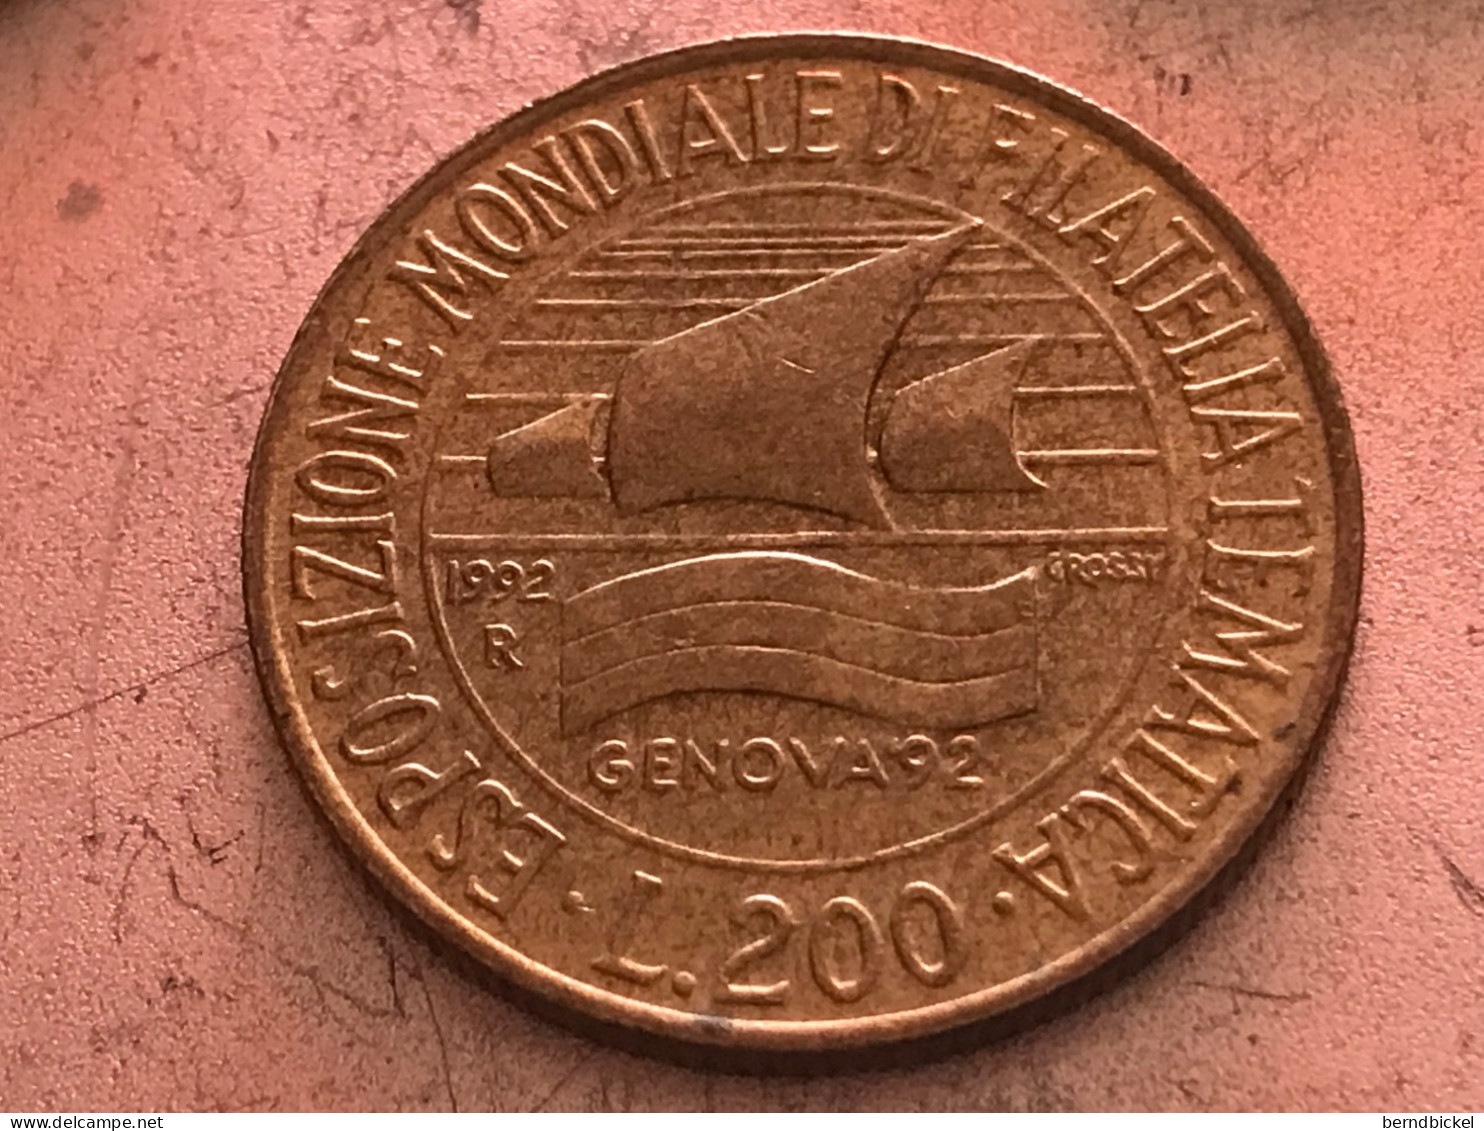 Münze Münzen Umlaufmünze Gedenkmünze Italien 200 Lire 1992 Briefmarkenausstellung Genua - Gedenkmünzen